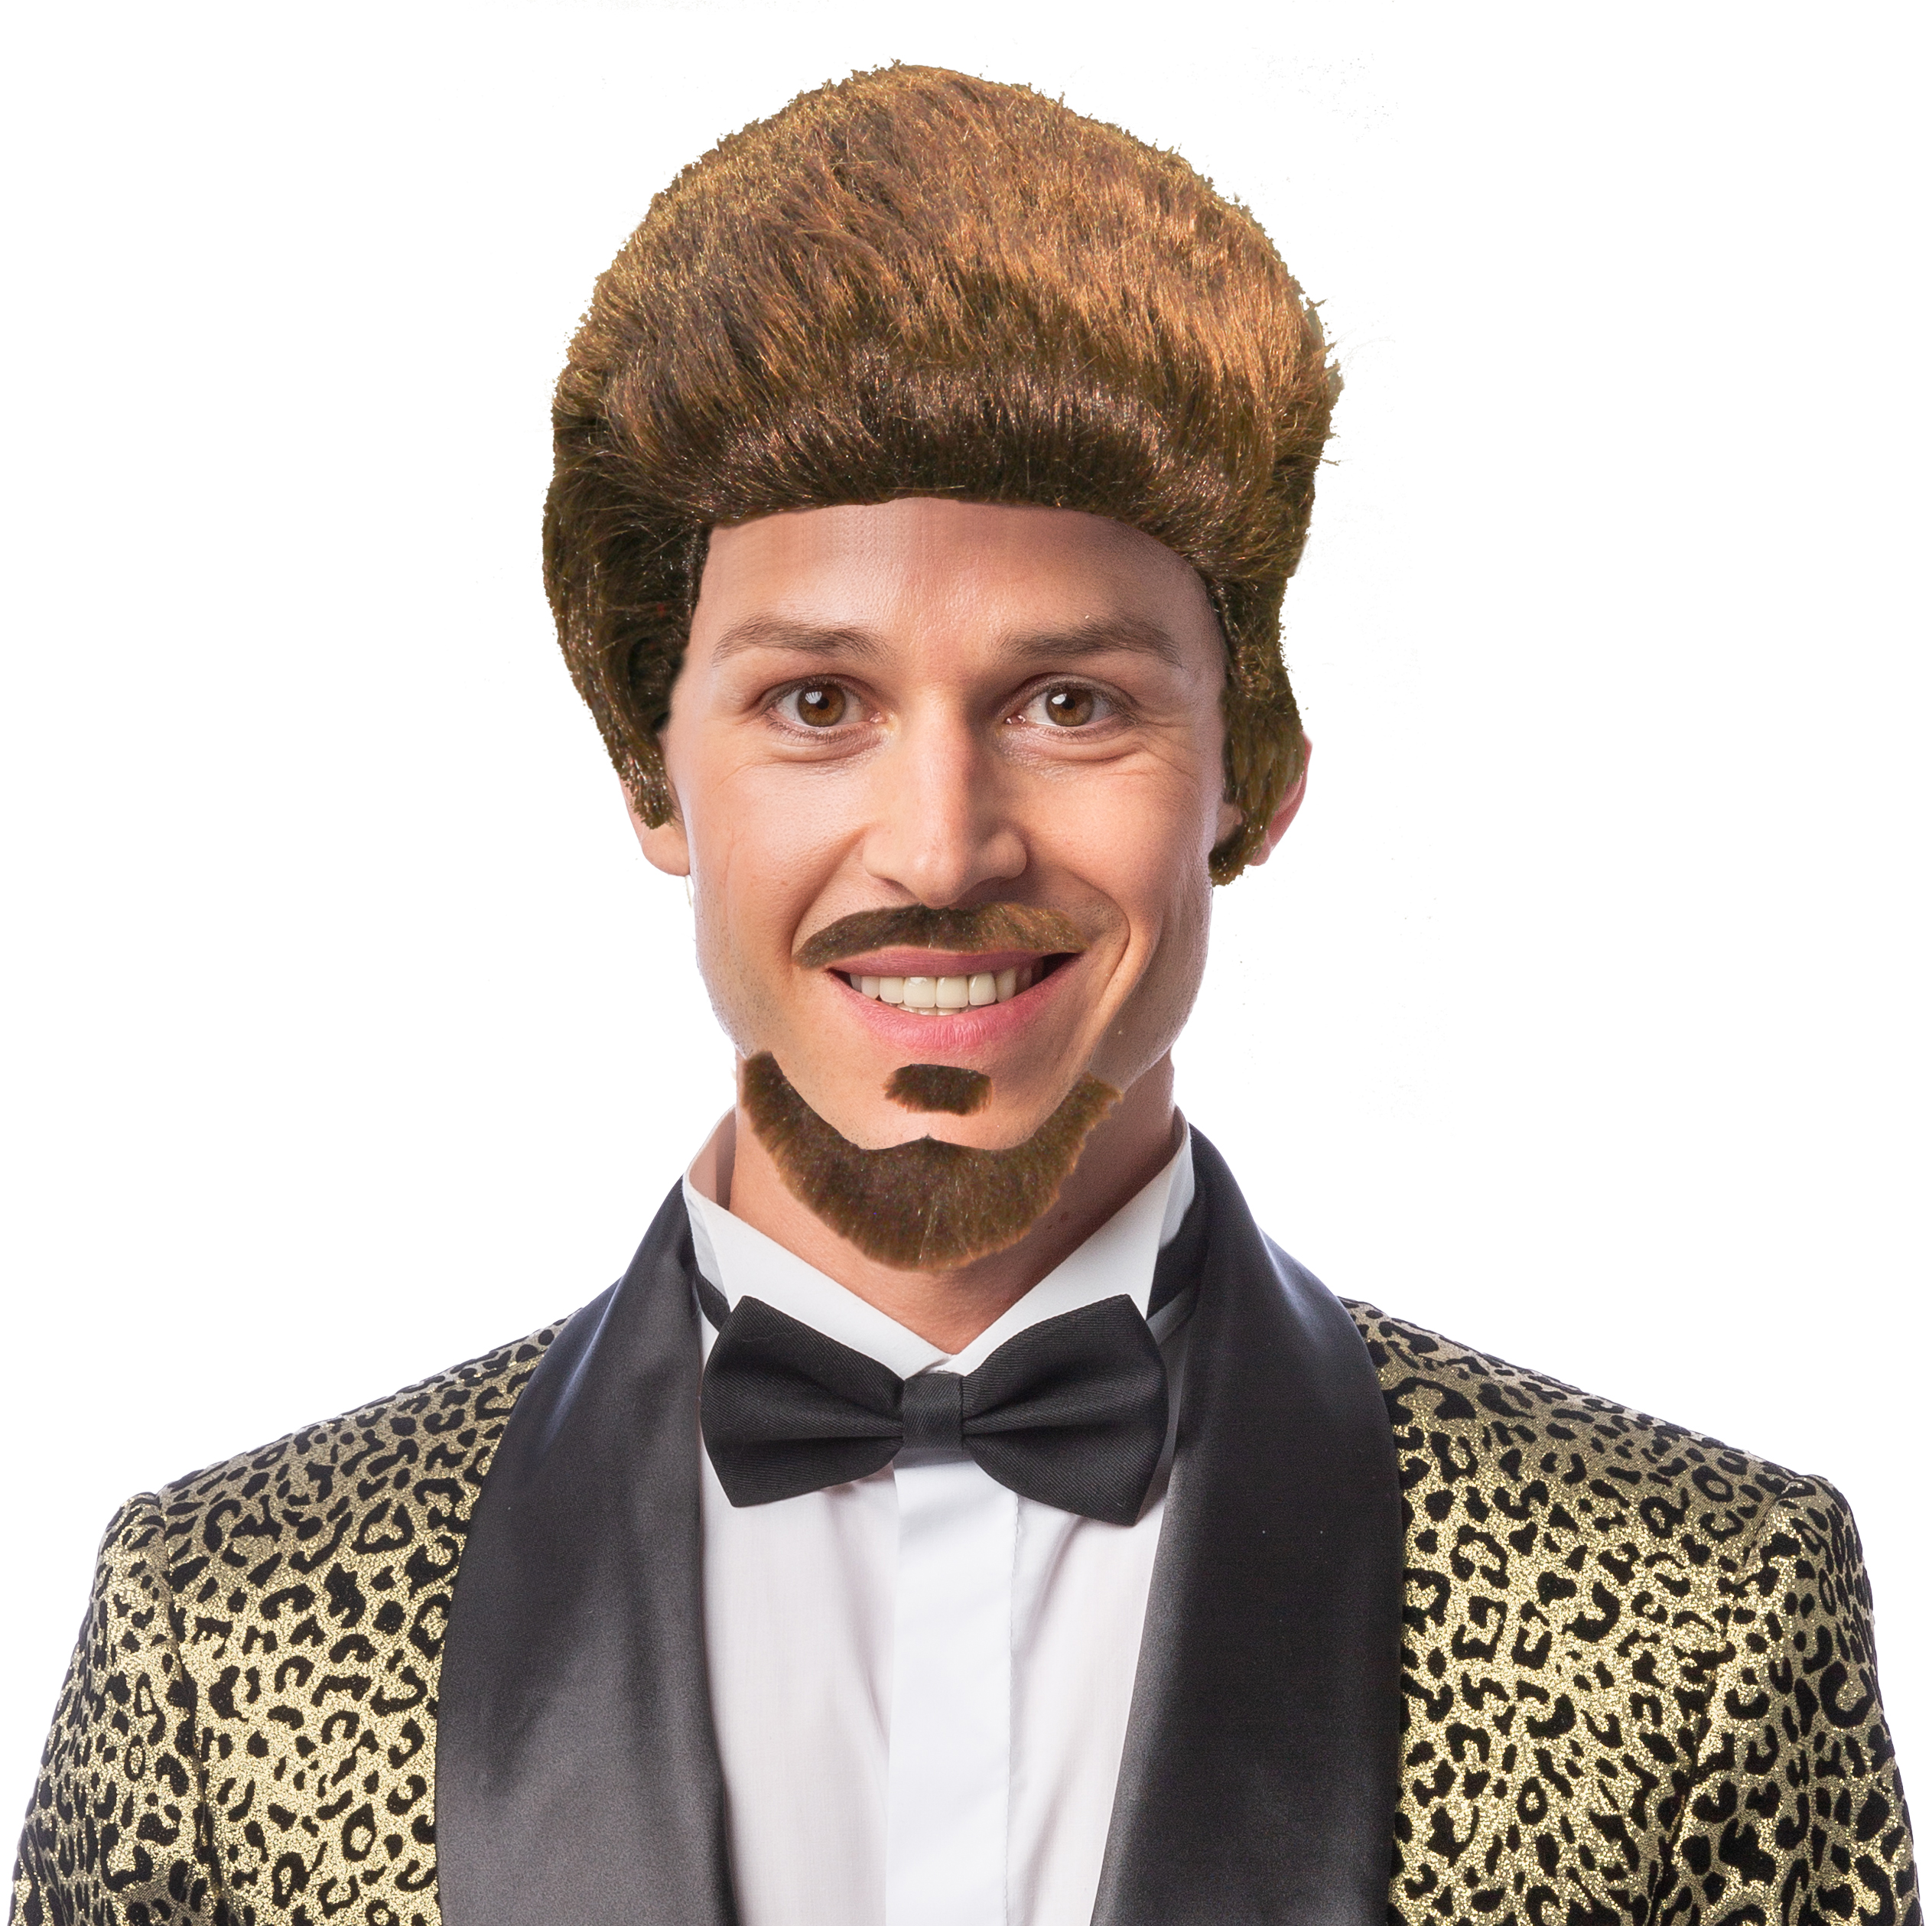 Men's wig with 3-piece short beard, brown